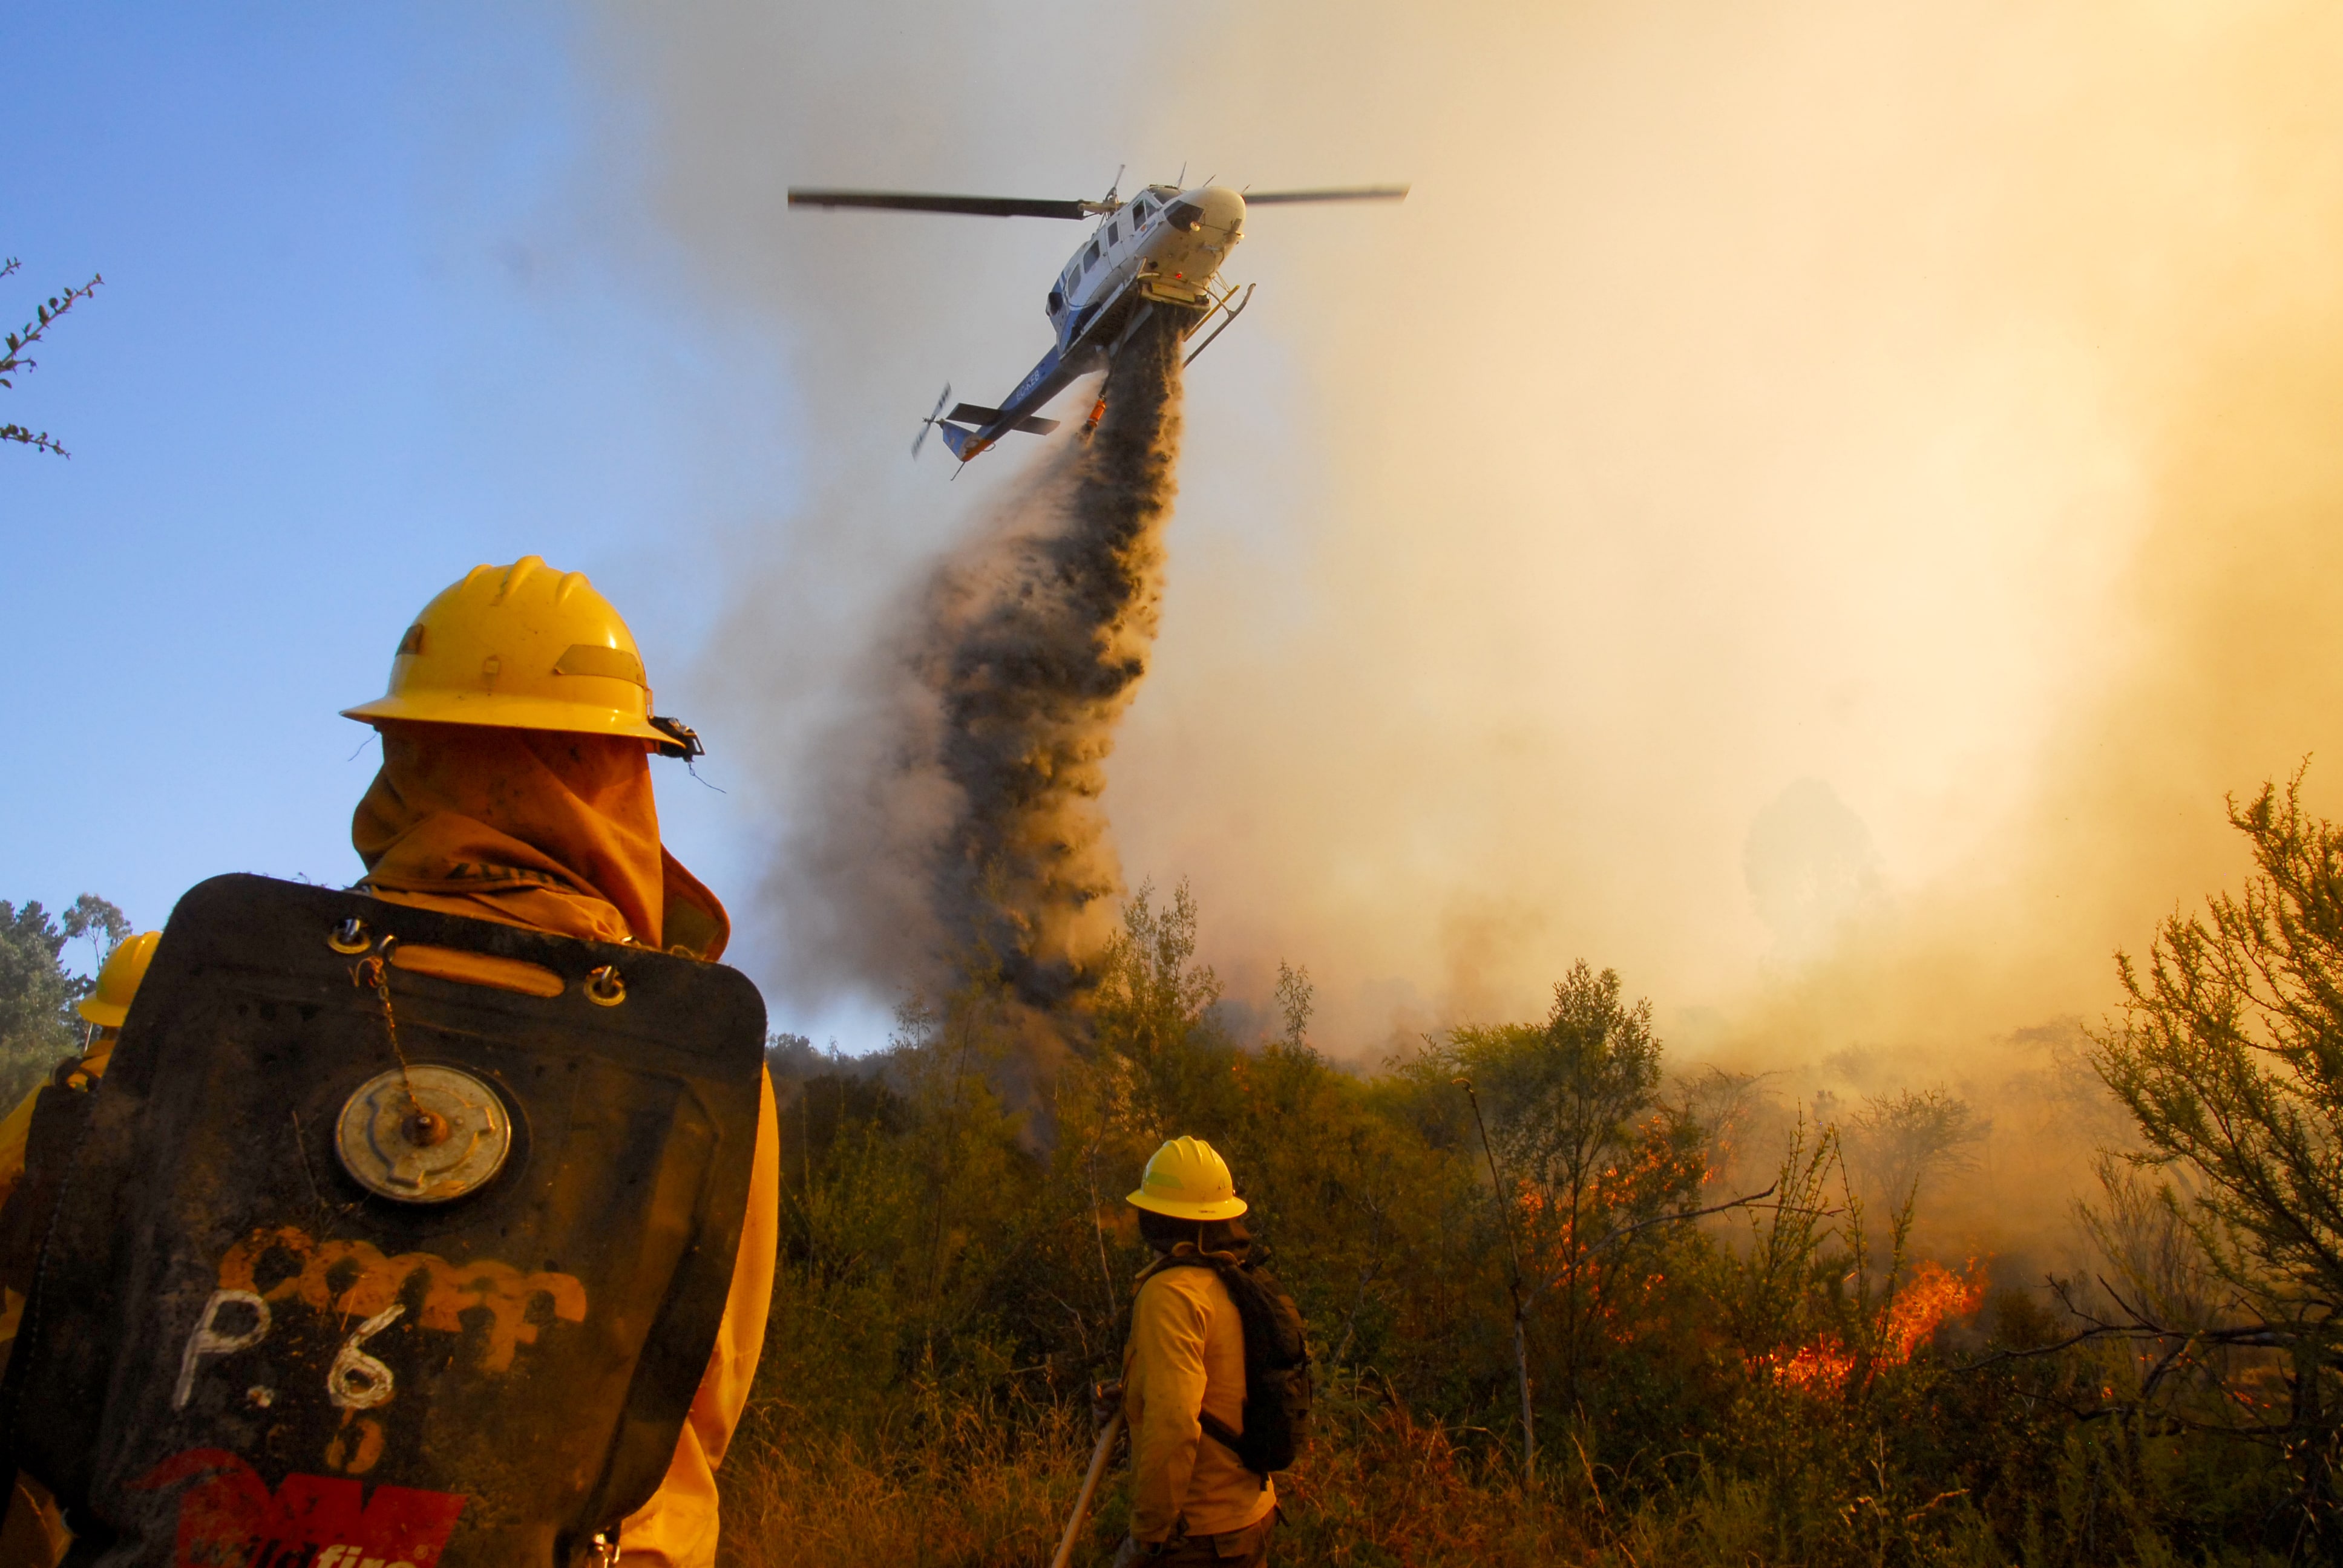 Ministro de Agricultura hace un balance de incendios forestales: “La buena noticia es que aún teniendo más incendios, hay menos superficie quemada”.